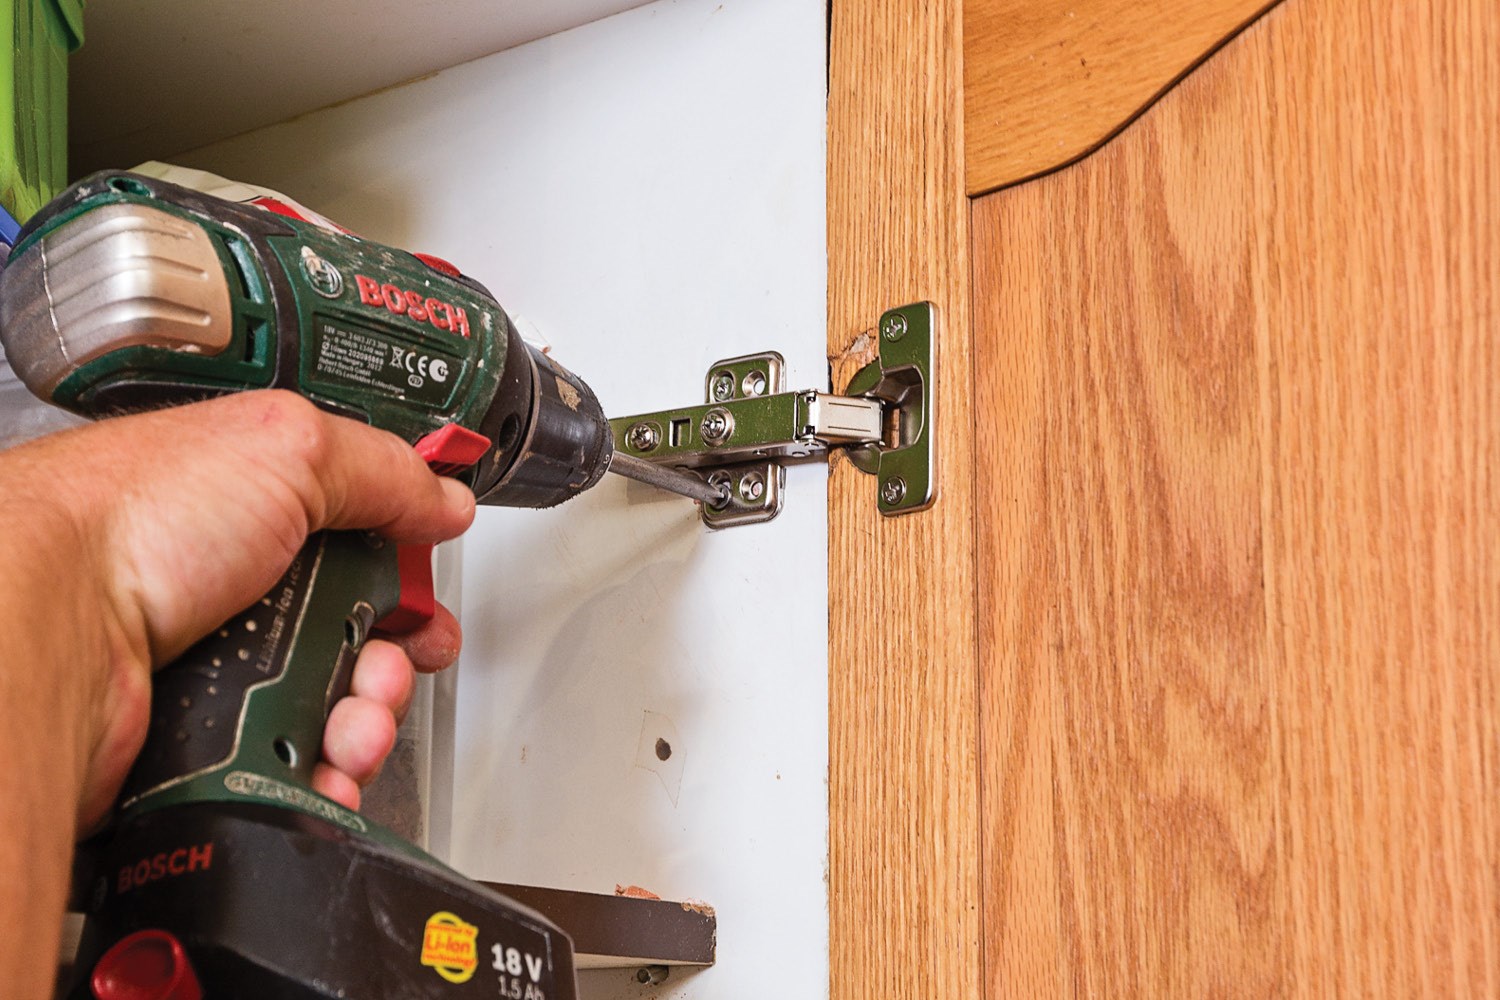  how to fix kitchen cabinet door hinges